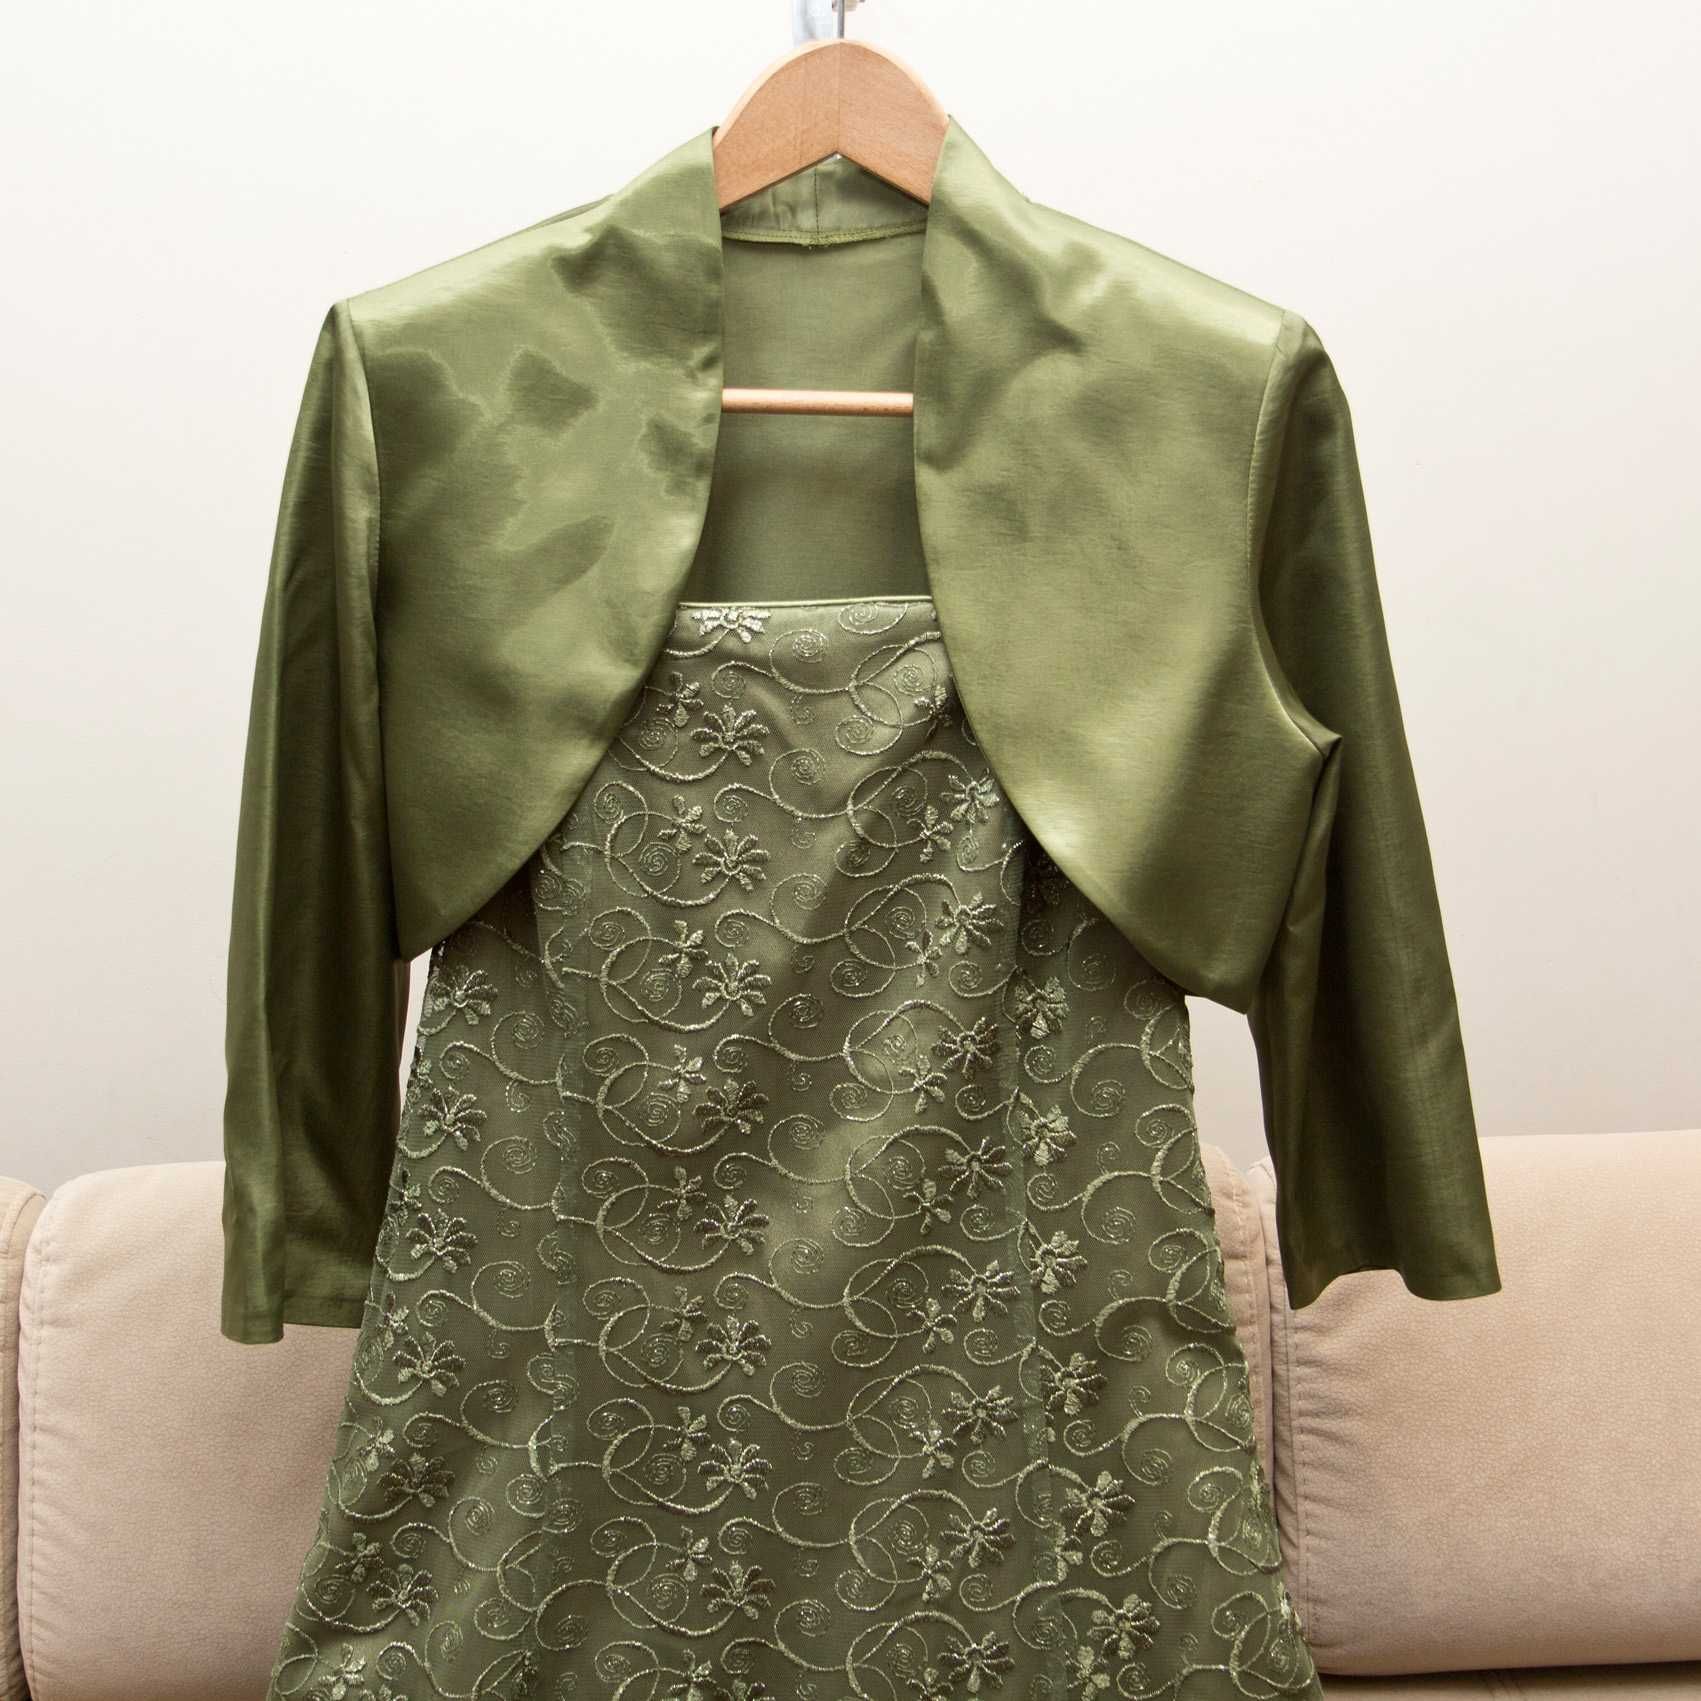 Suknia Balowa - Zielona - Rozmiar 42